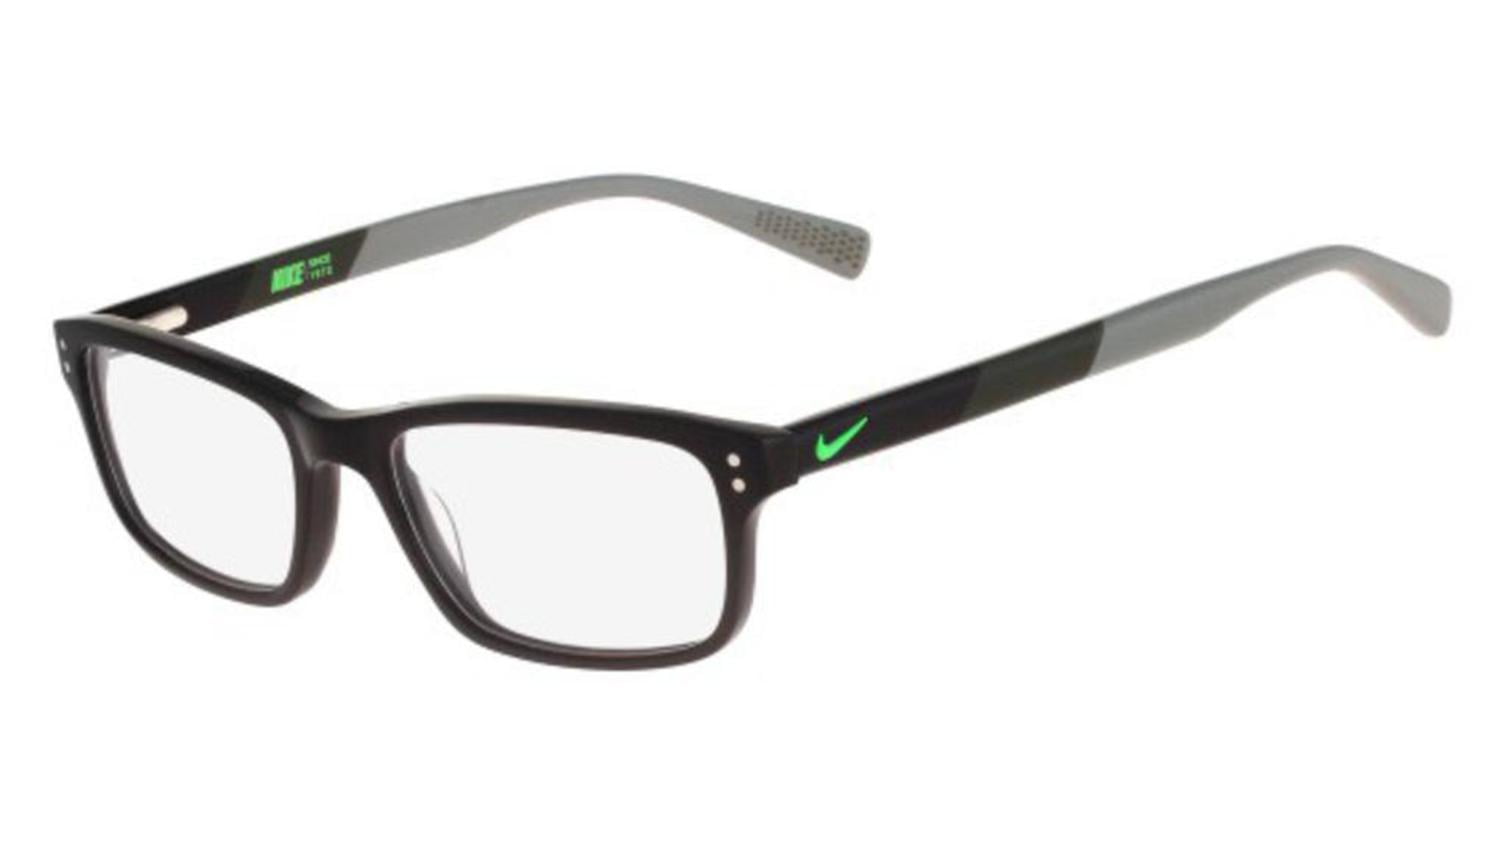 Nike Mens Eyeglasses 7237 001 Blackgreygreen Full Rim Optical Frame 52mm 